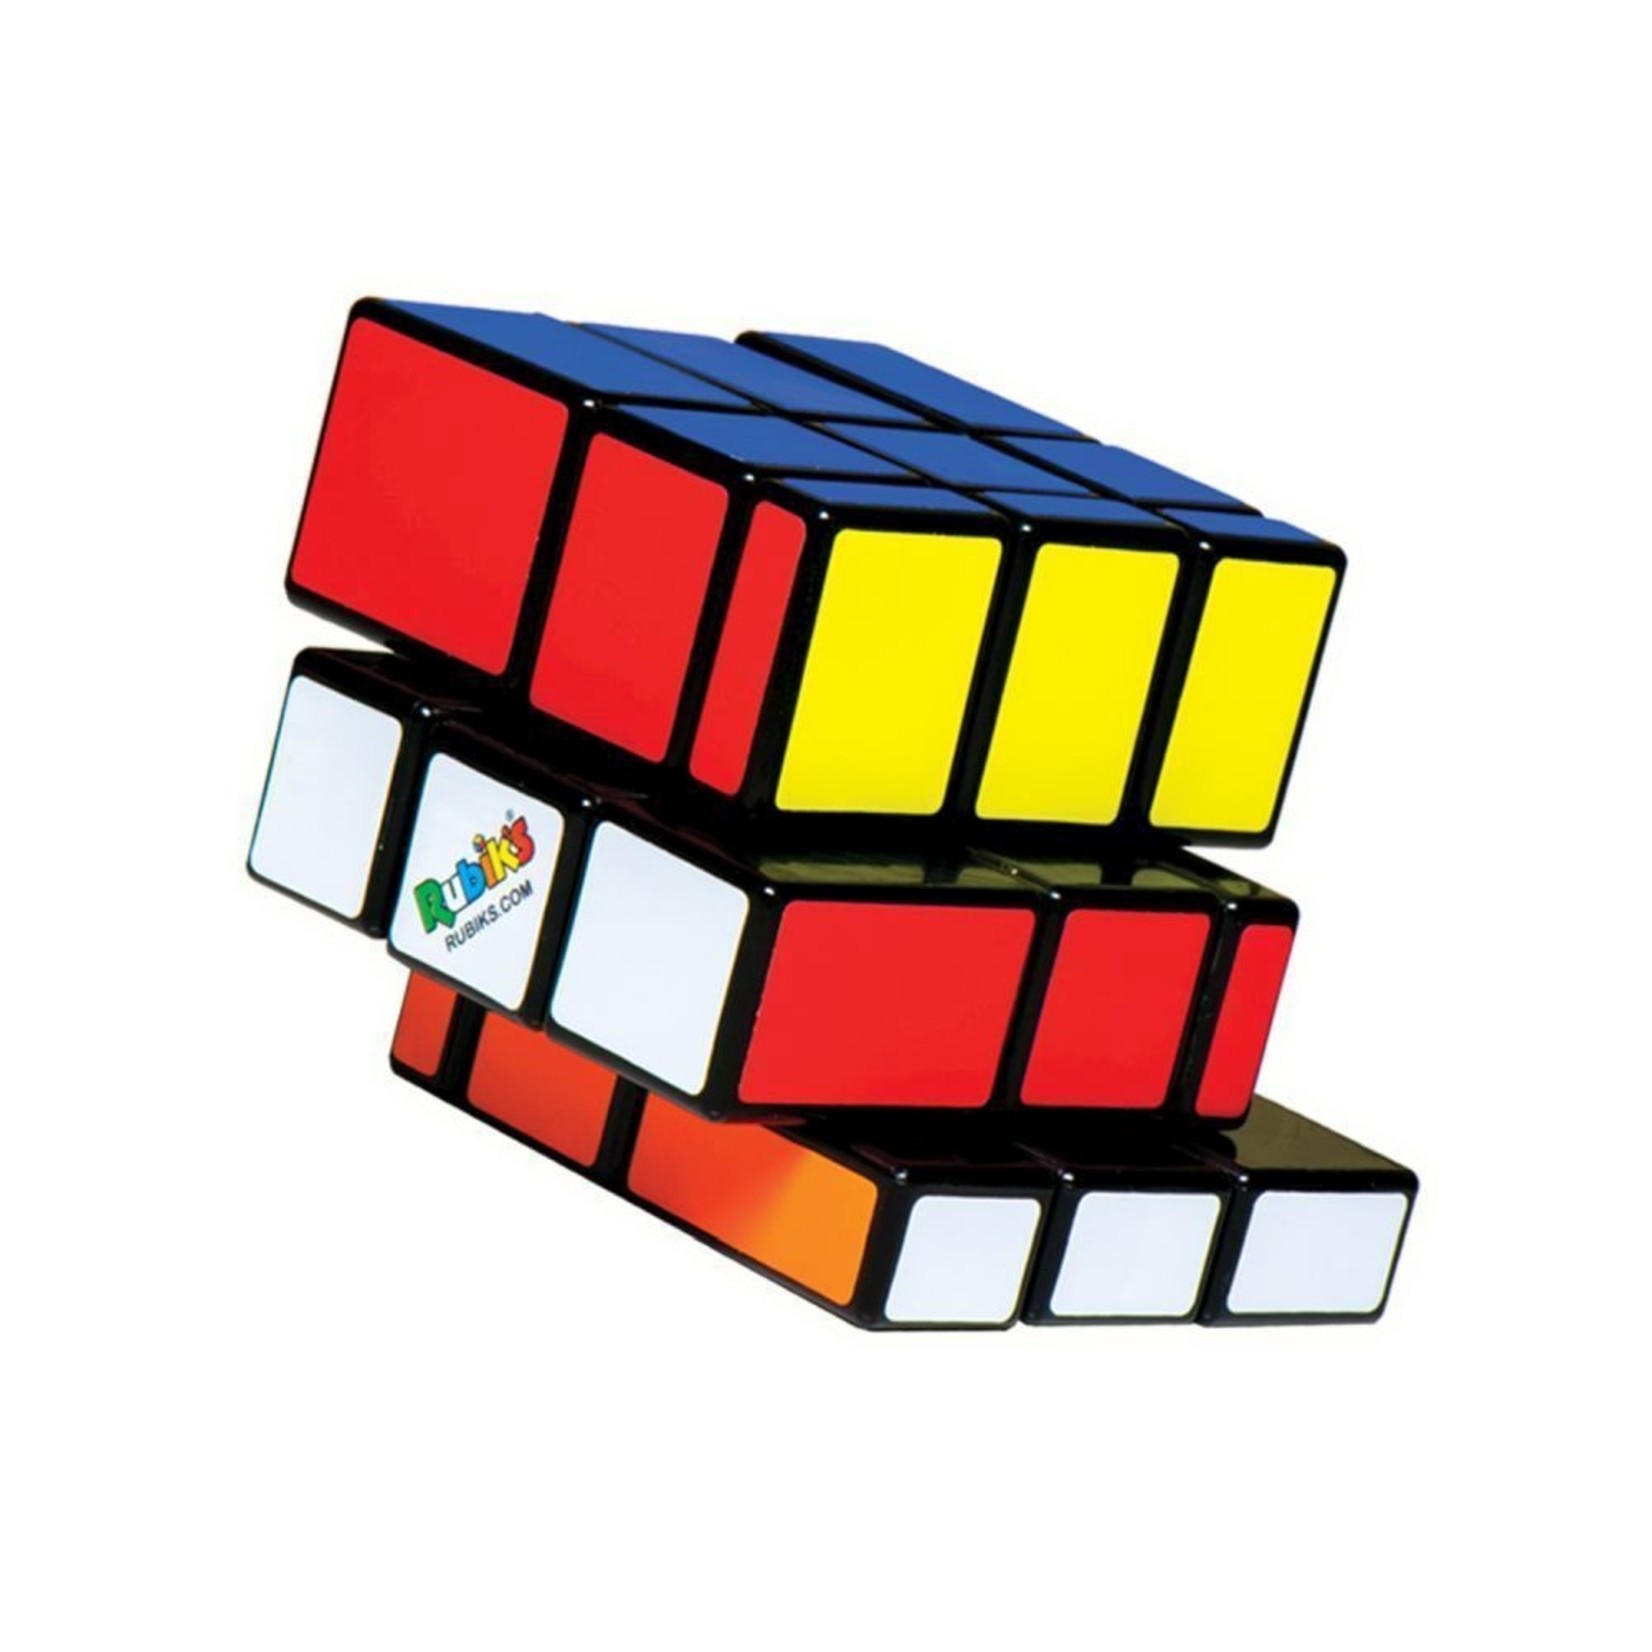 Spinmaster Rubiks Blocks 3x3